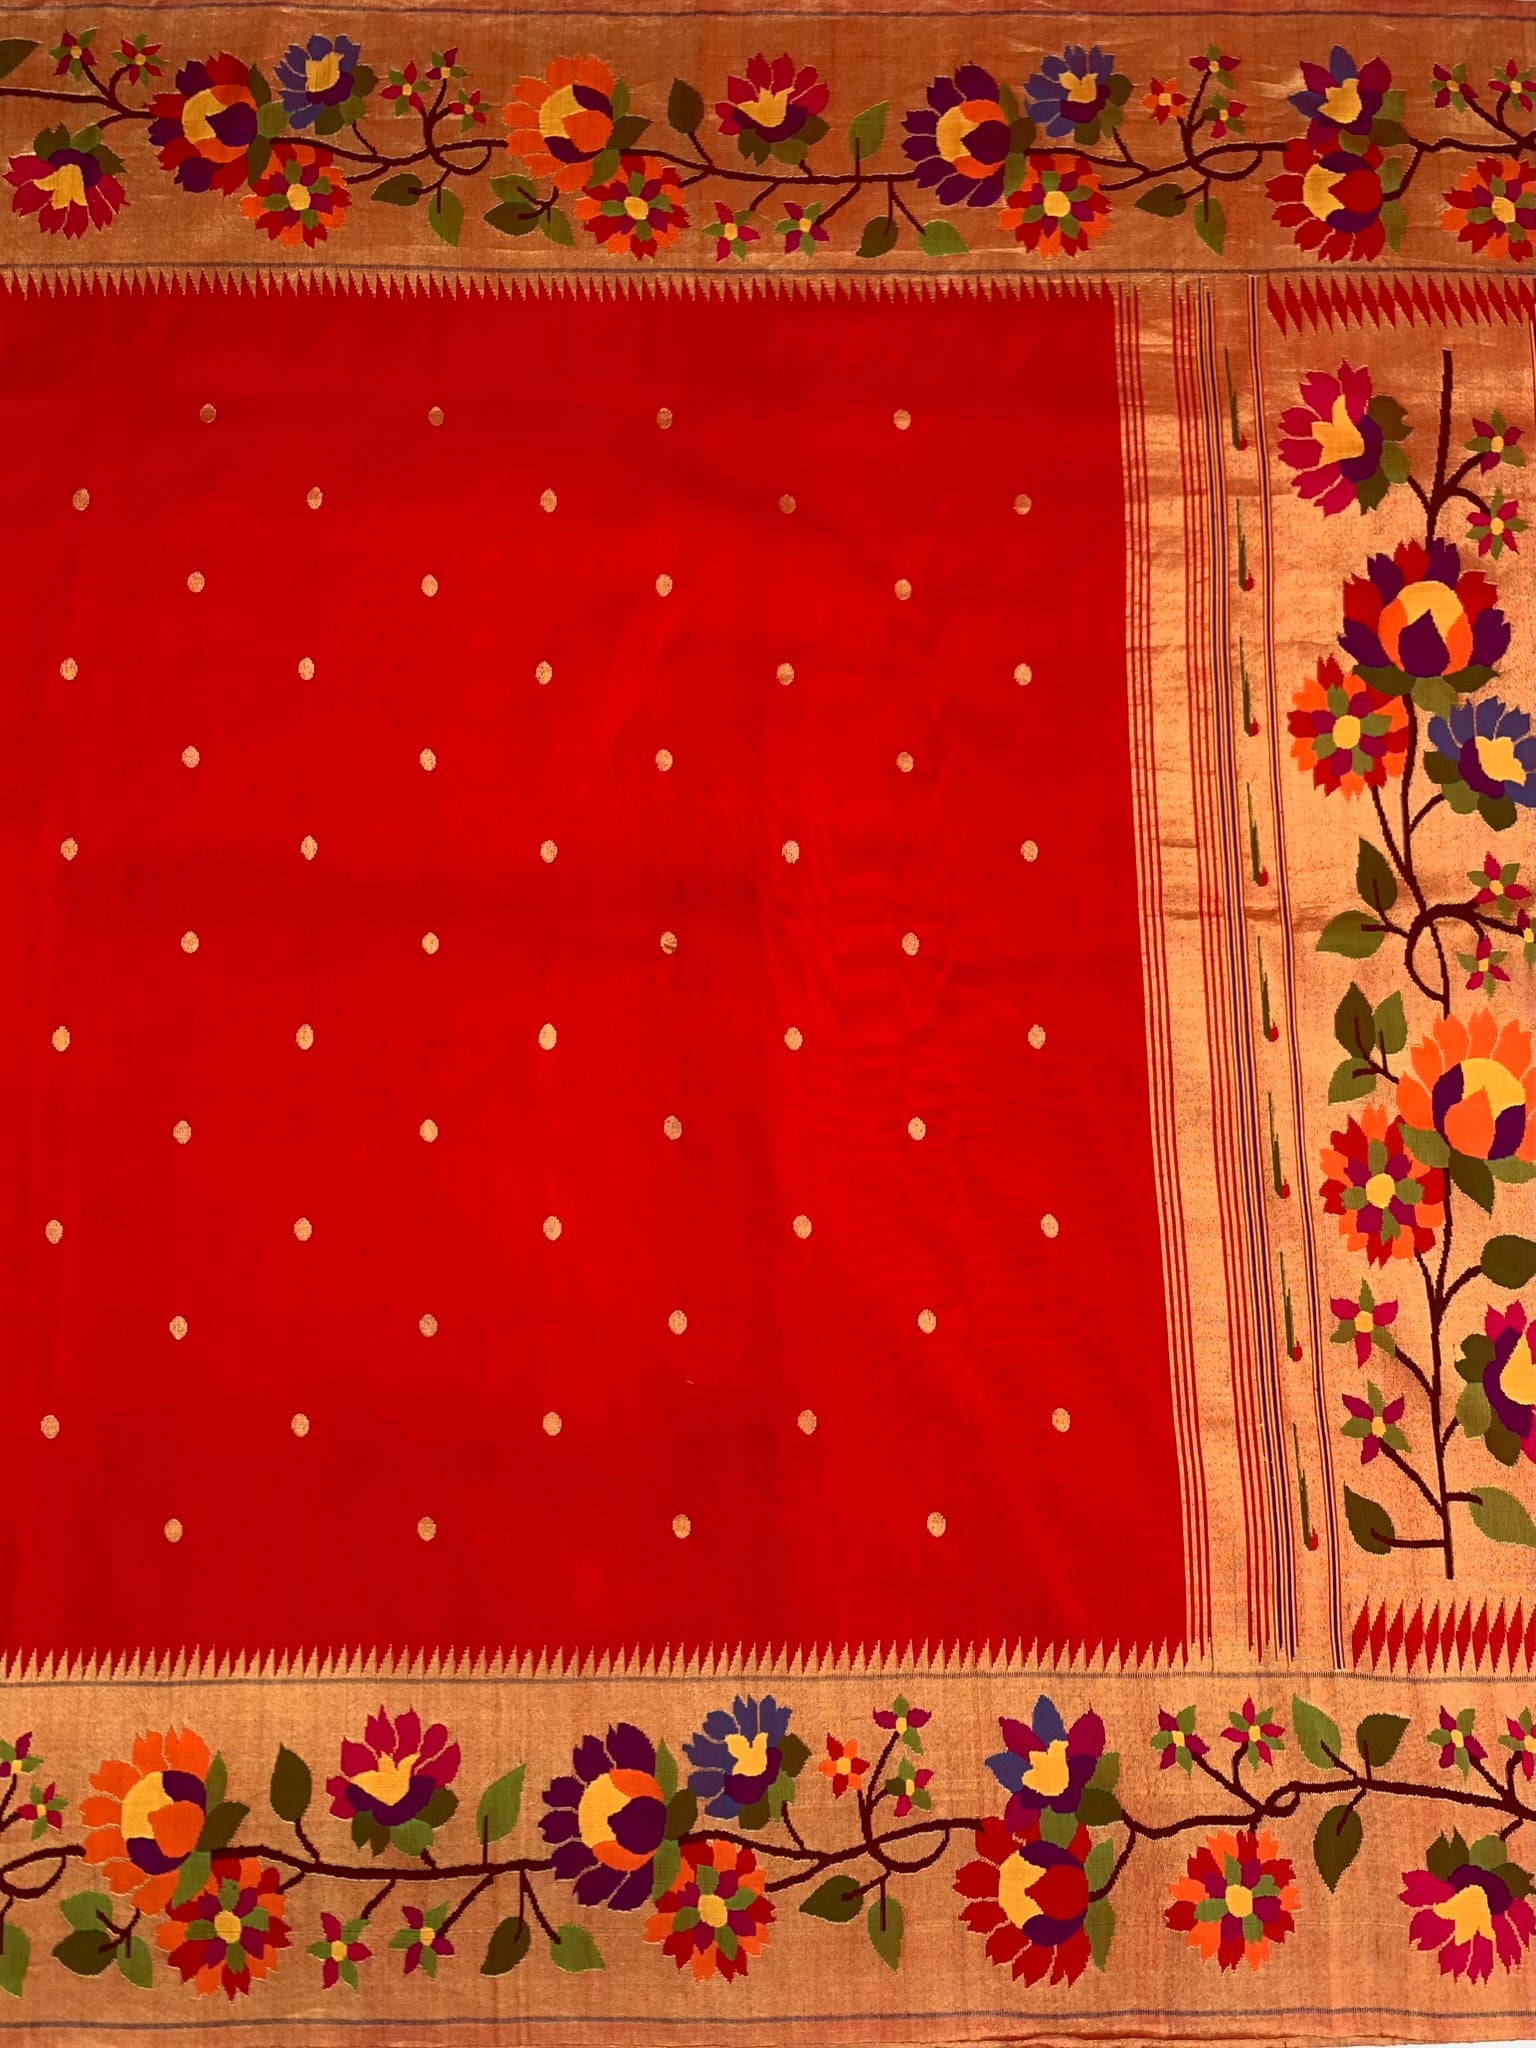 Hand Embroidery Saree Border | Jana Art - YouTube